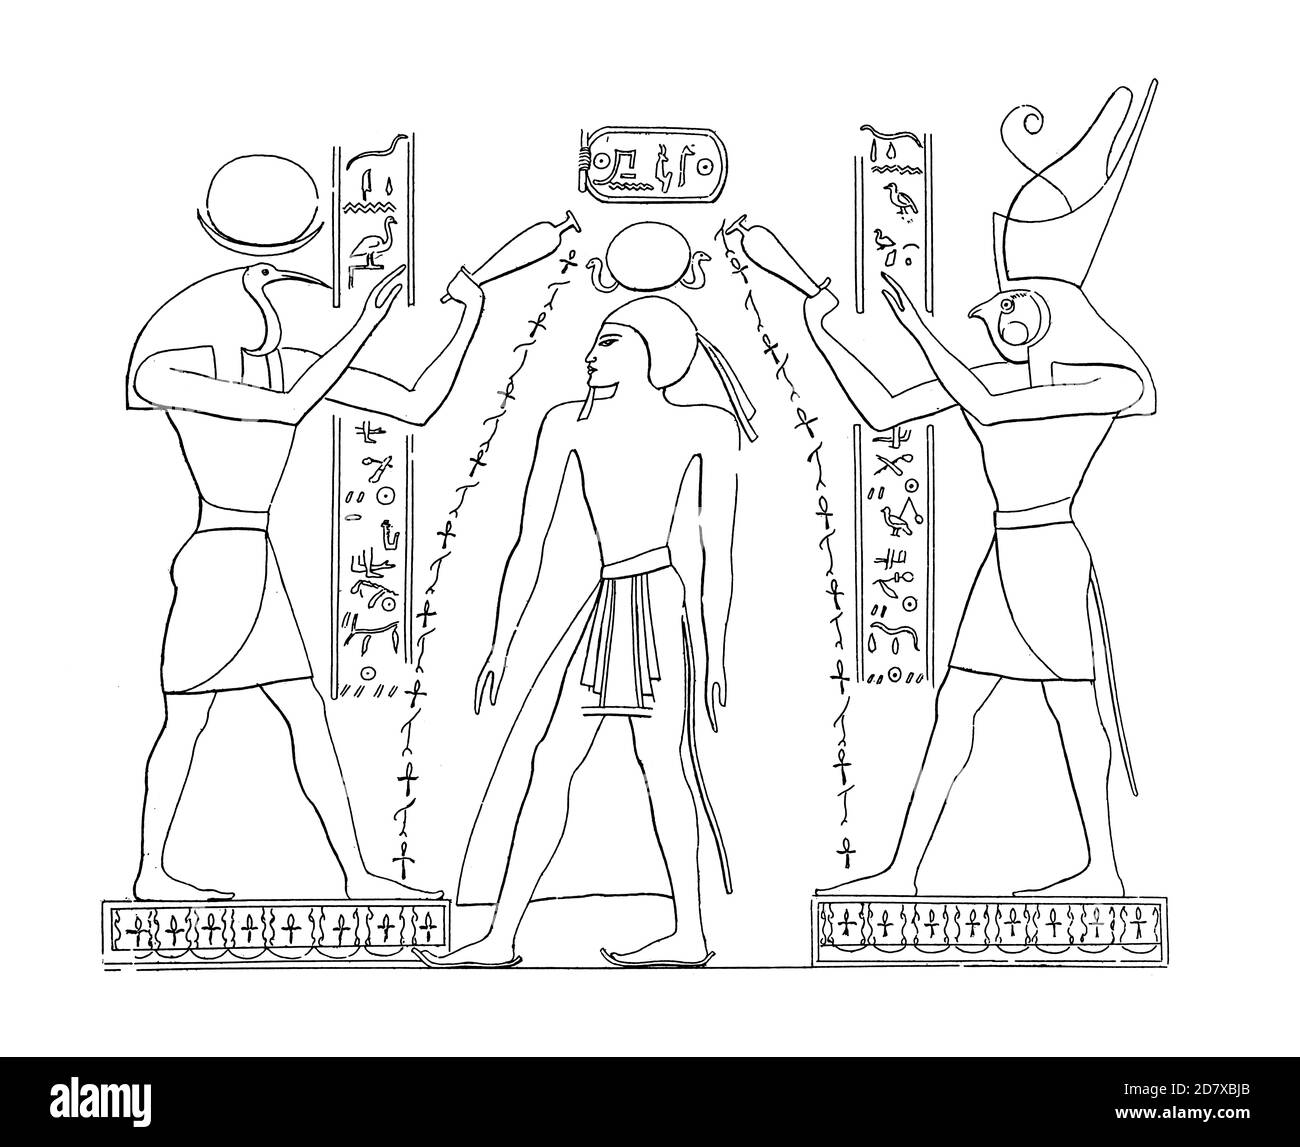 Gravure antique représentant la peinture de Thoth, Ramsès I et Horus à Louxor, Egypte. Illustration publiée dans Systematischer Bilder Atlas - Bauwesen, Banque D'Images